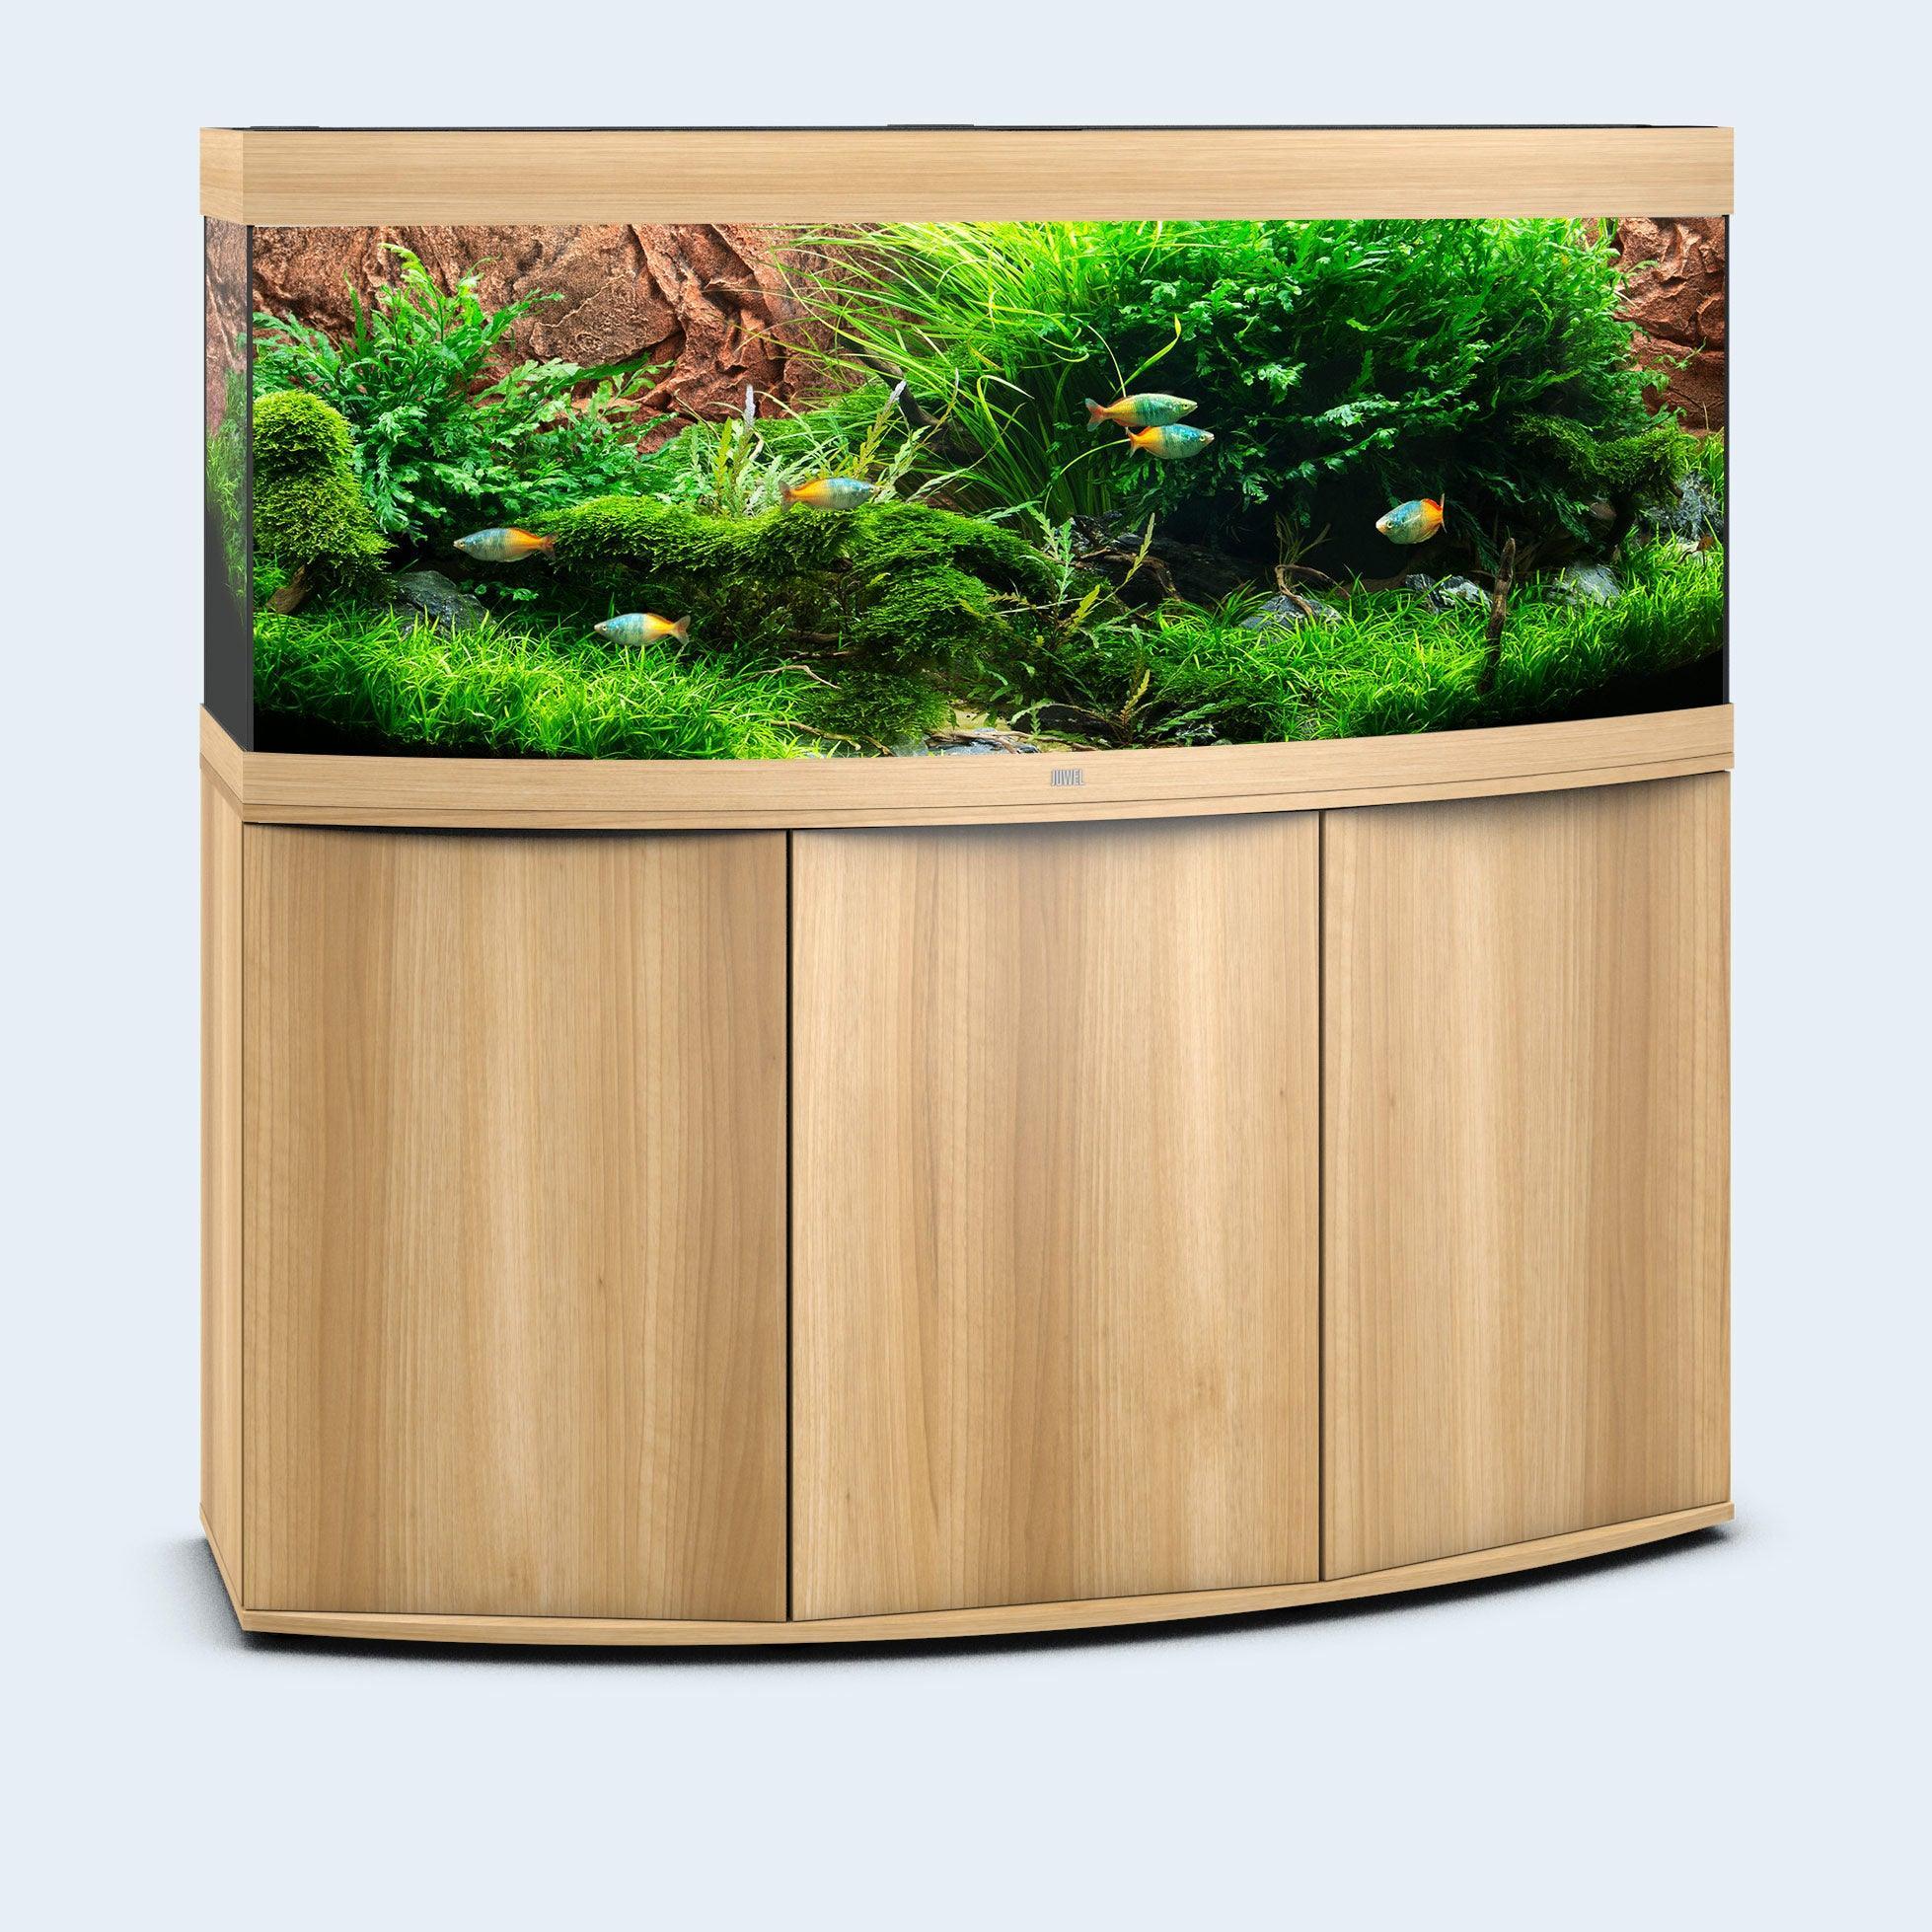 Juwel Vision 450 LED Aquarium and Cabinet - Amazing Amazon